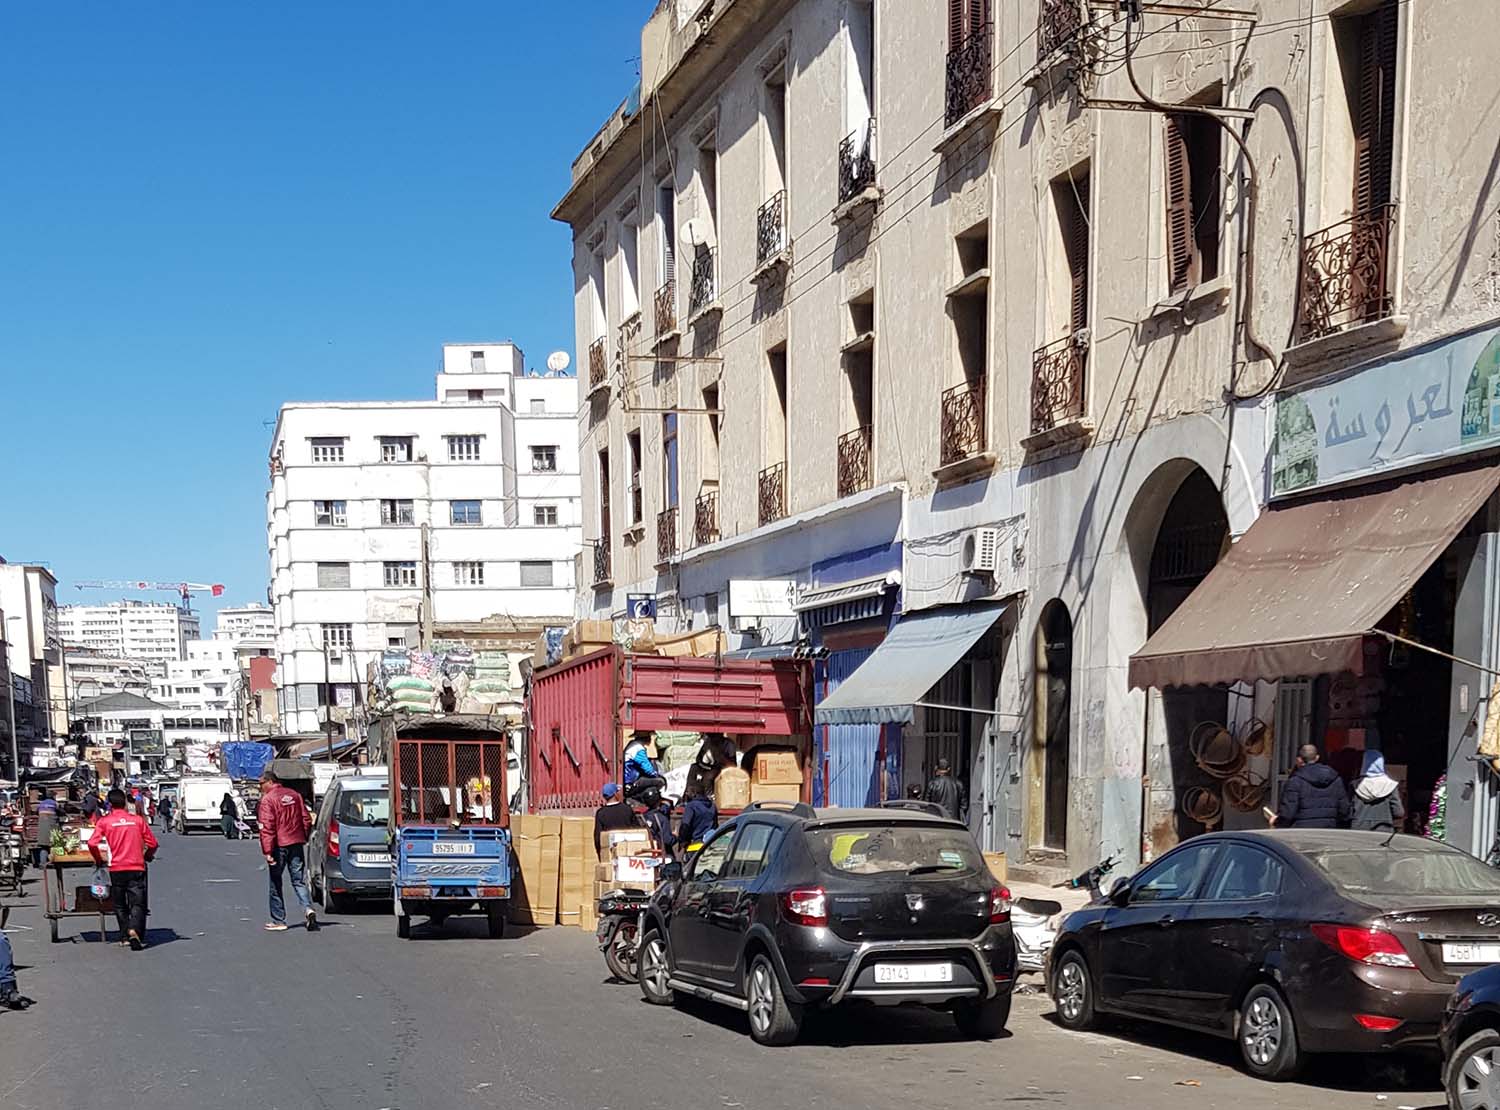 Derb Omar commercial district in Casablanca